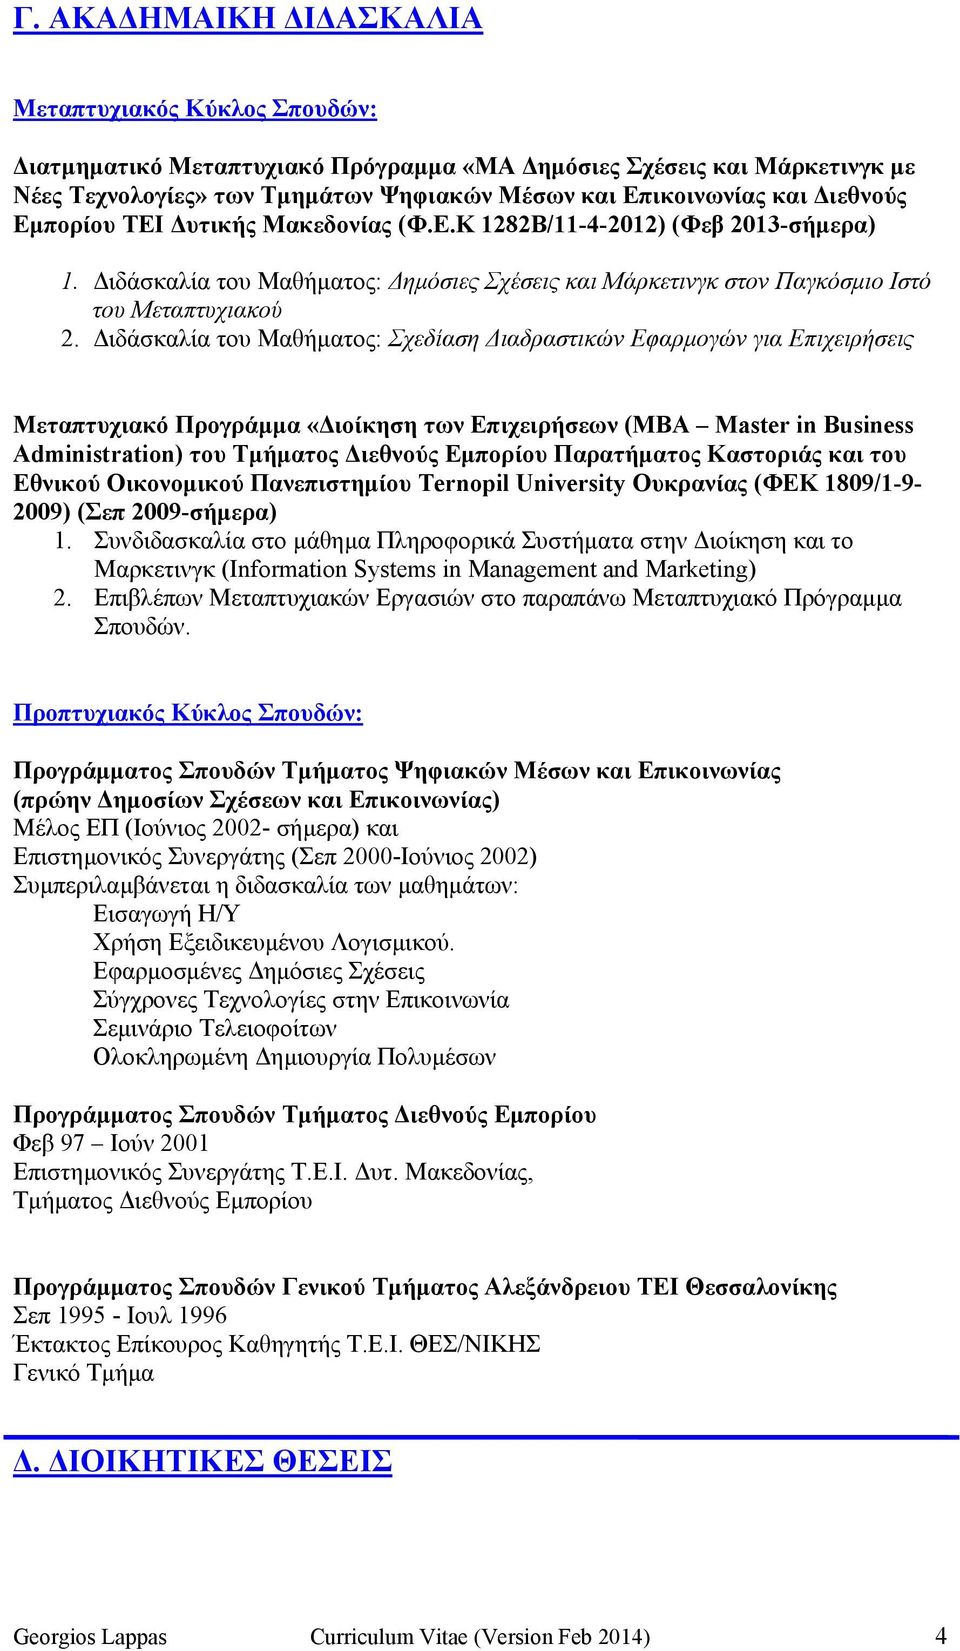 ιδάσκαλία του Μαθήµατος: Σχεδίαση ιαδραστικών Εφαρµογών για Επιχειρήσεις Μεταπτυχιακό Προγράµµα «ιοίκηση των Επιχειρήσεων (ΜΒΑ Master in Business Administration) του Τµήµατος ιεθνούς Εµπορίου